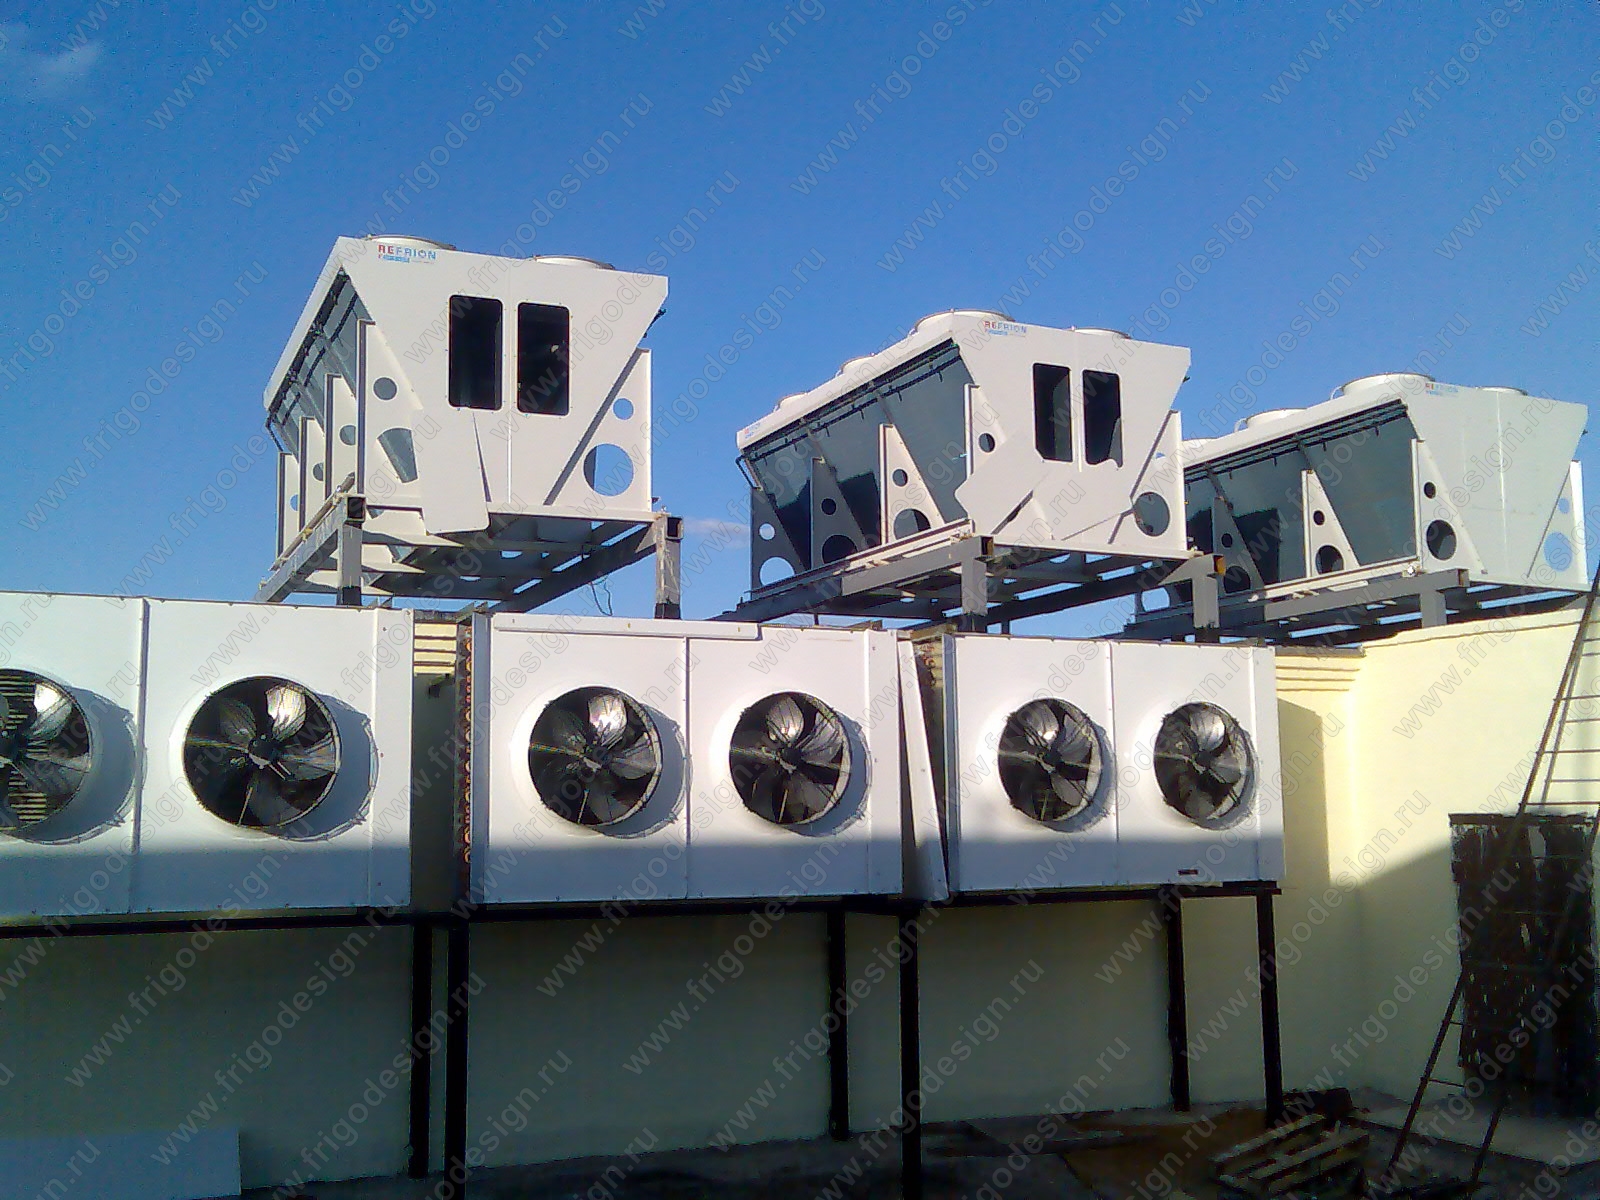 Конденсаторы воздушного охлаждения системы холодоснабжения на ЗАО «Оренбургский бройлер»